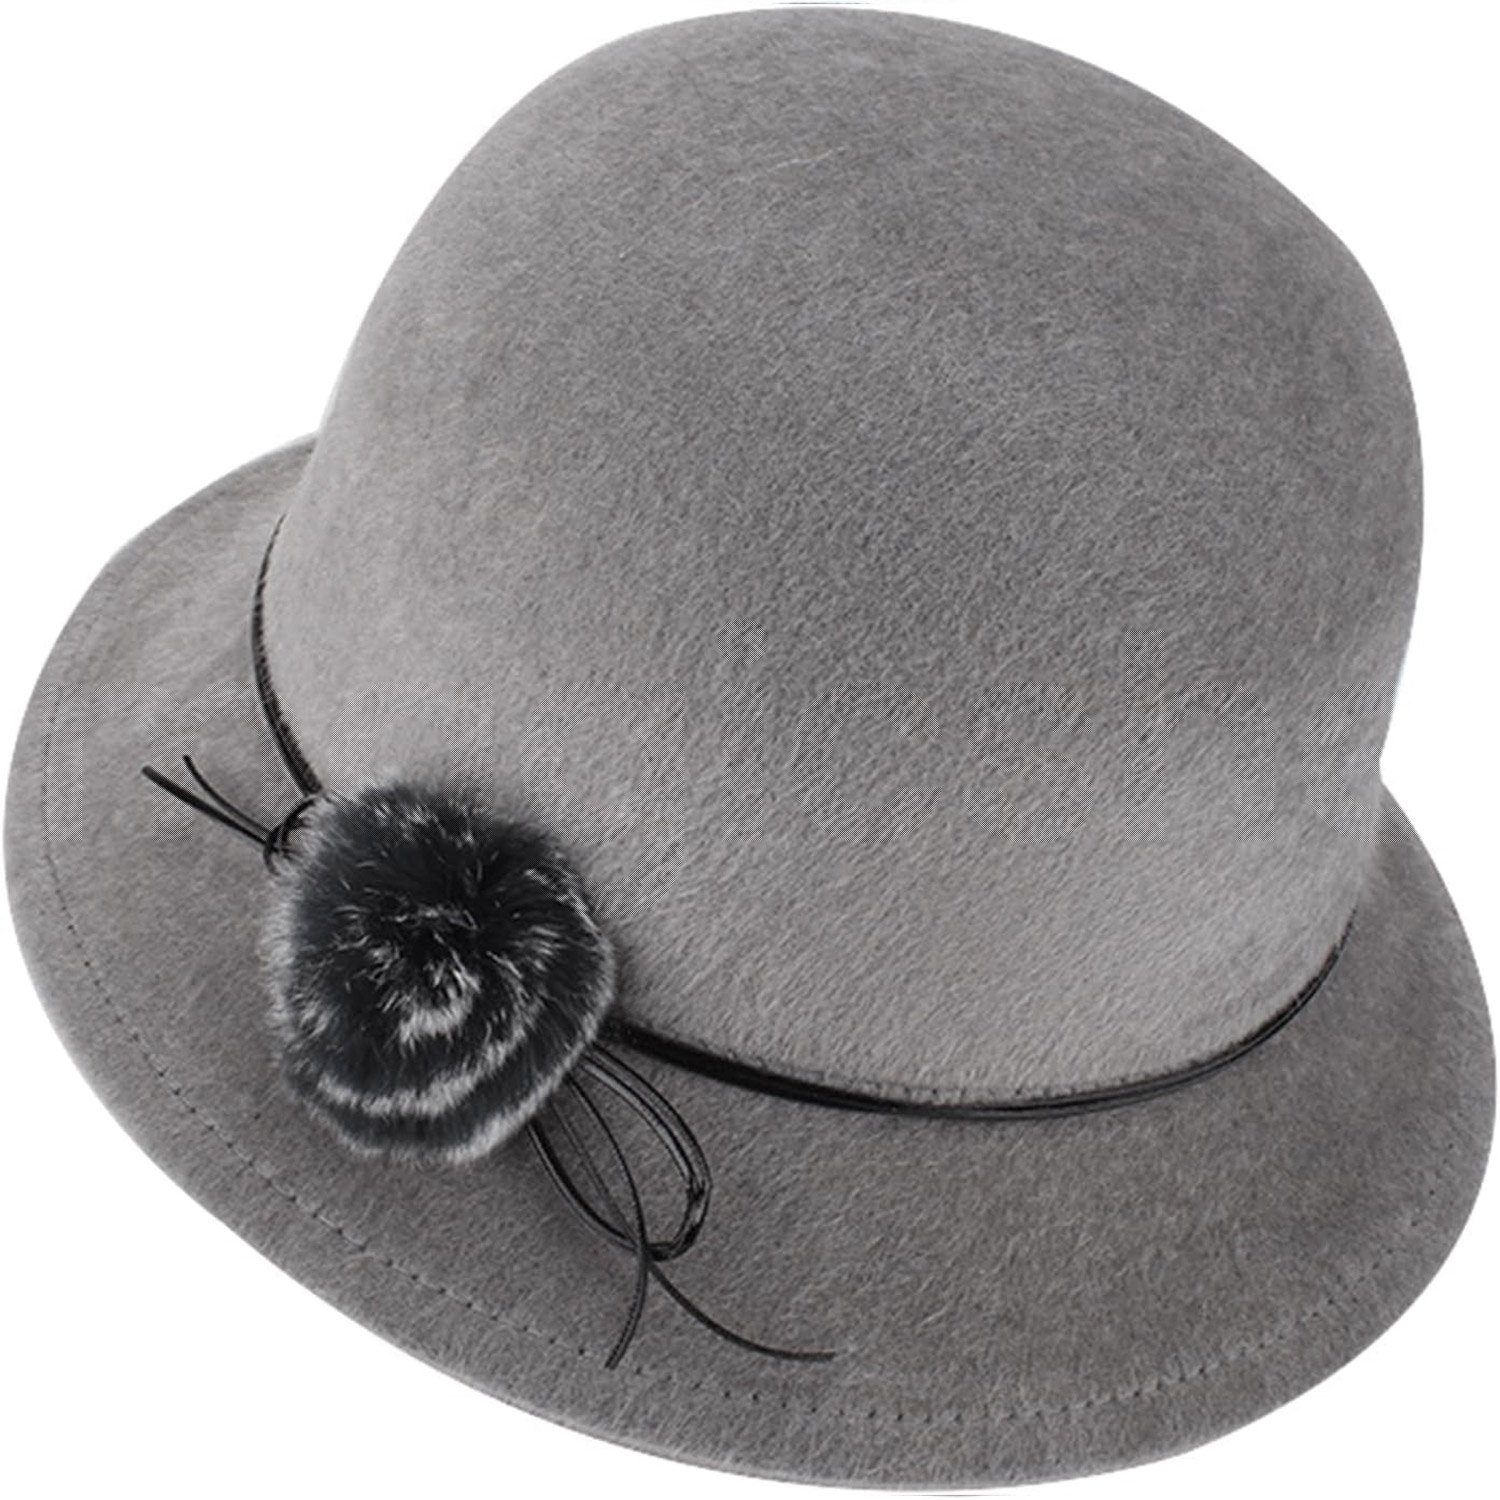 MAGICSHE Filzhut Wollfilz Fedora Hut,Eleganter Wintermütze Klassisch Mütze Für Frauen grau